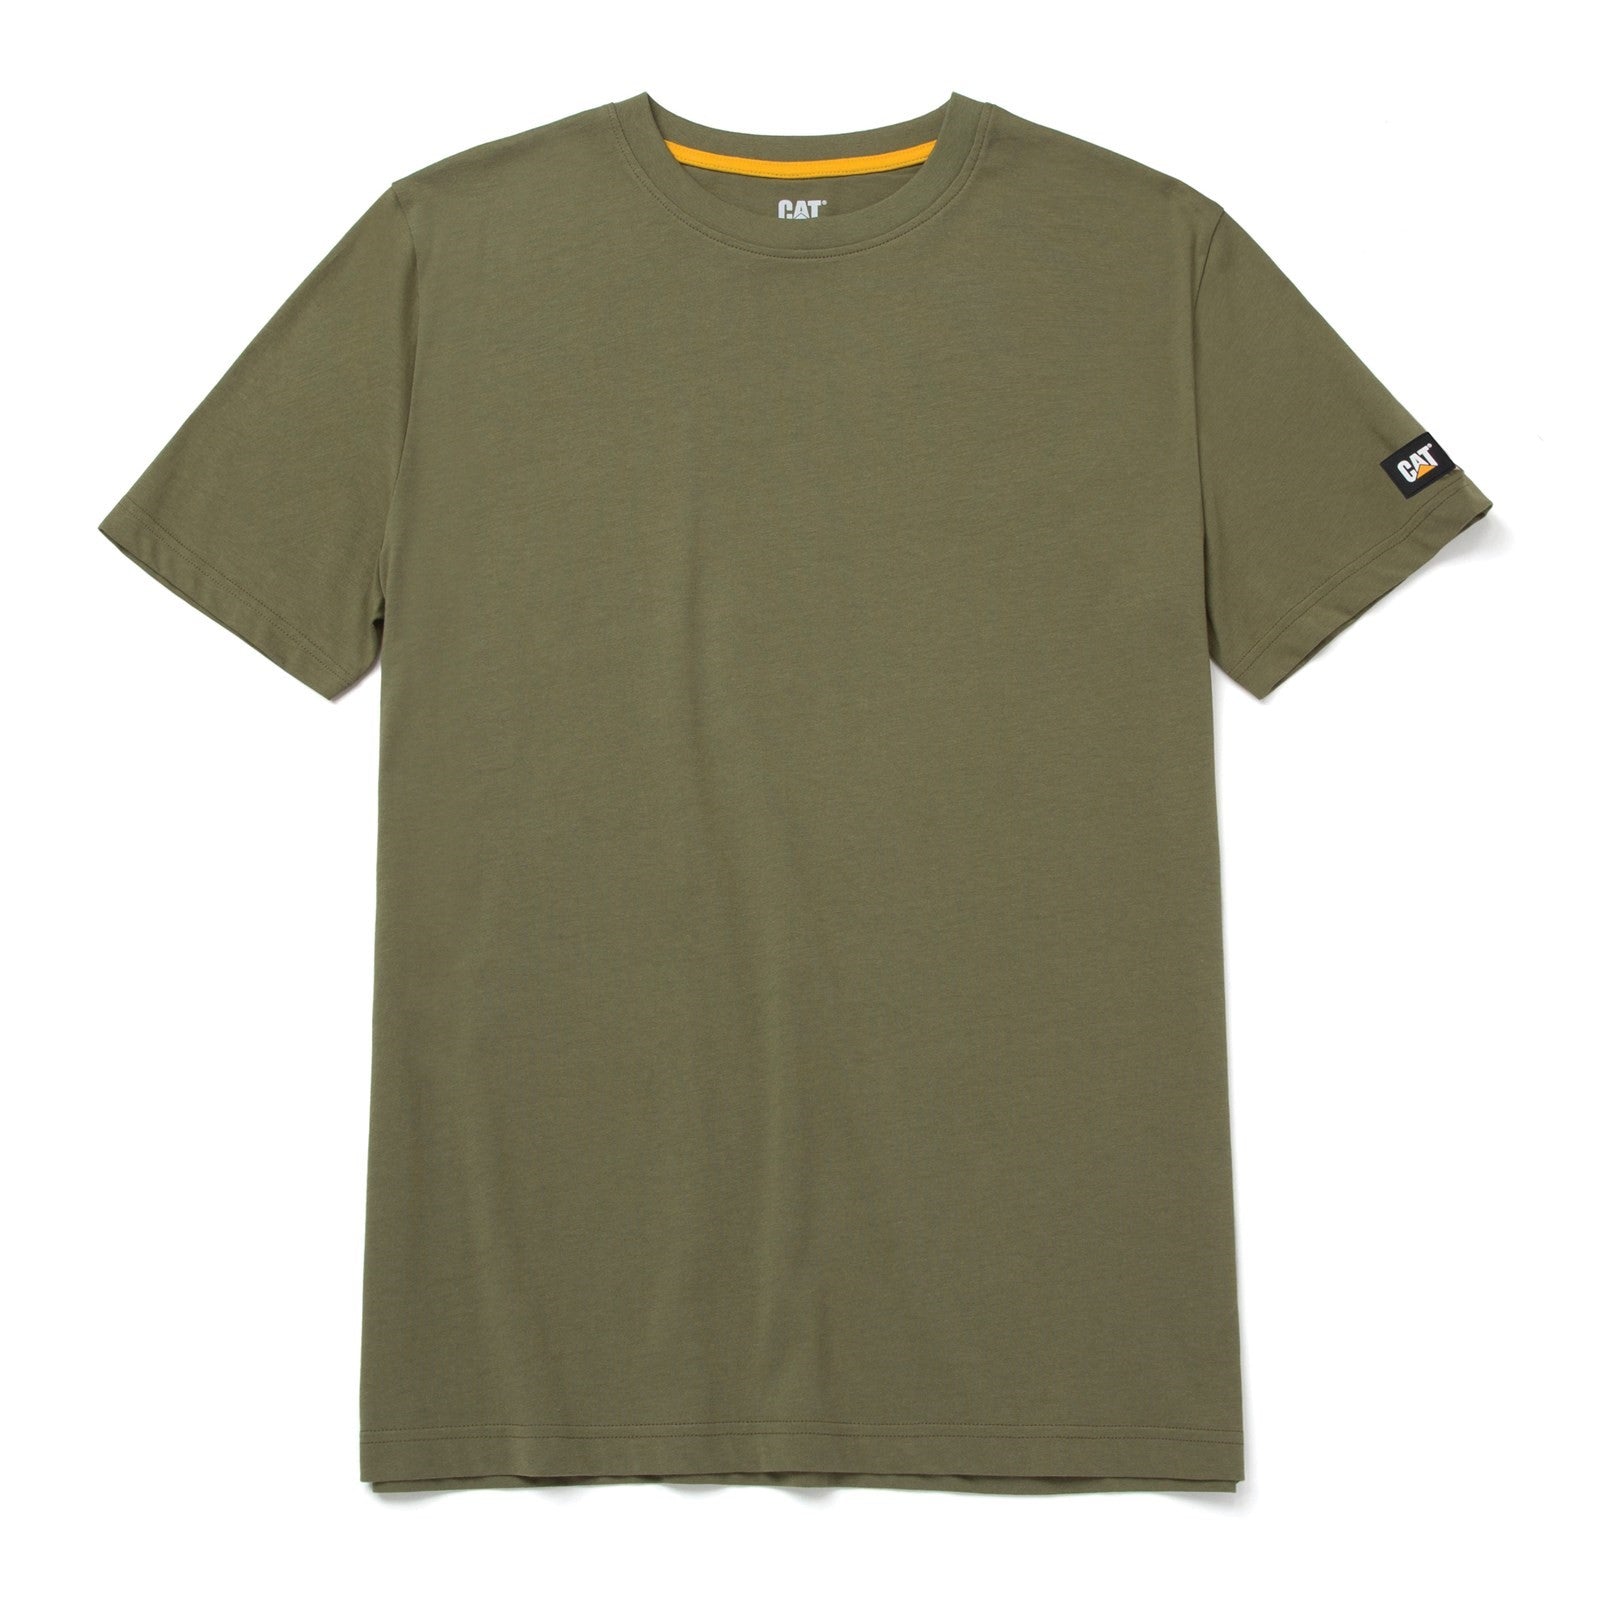 Caterpillar Essentials Short-sleeve T-shirt